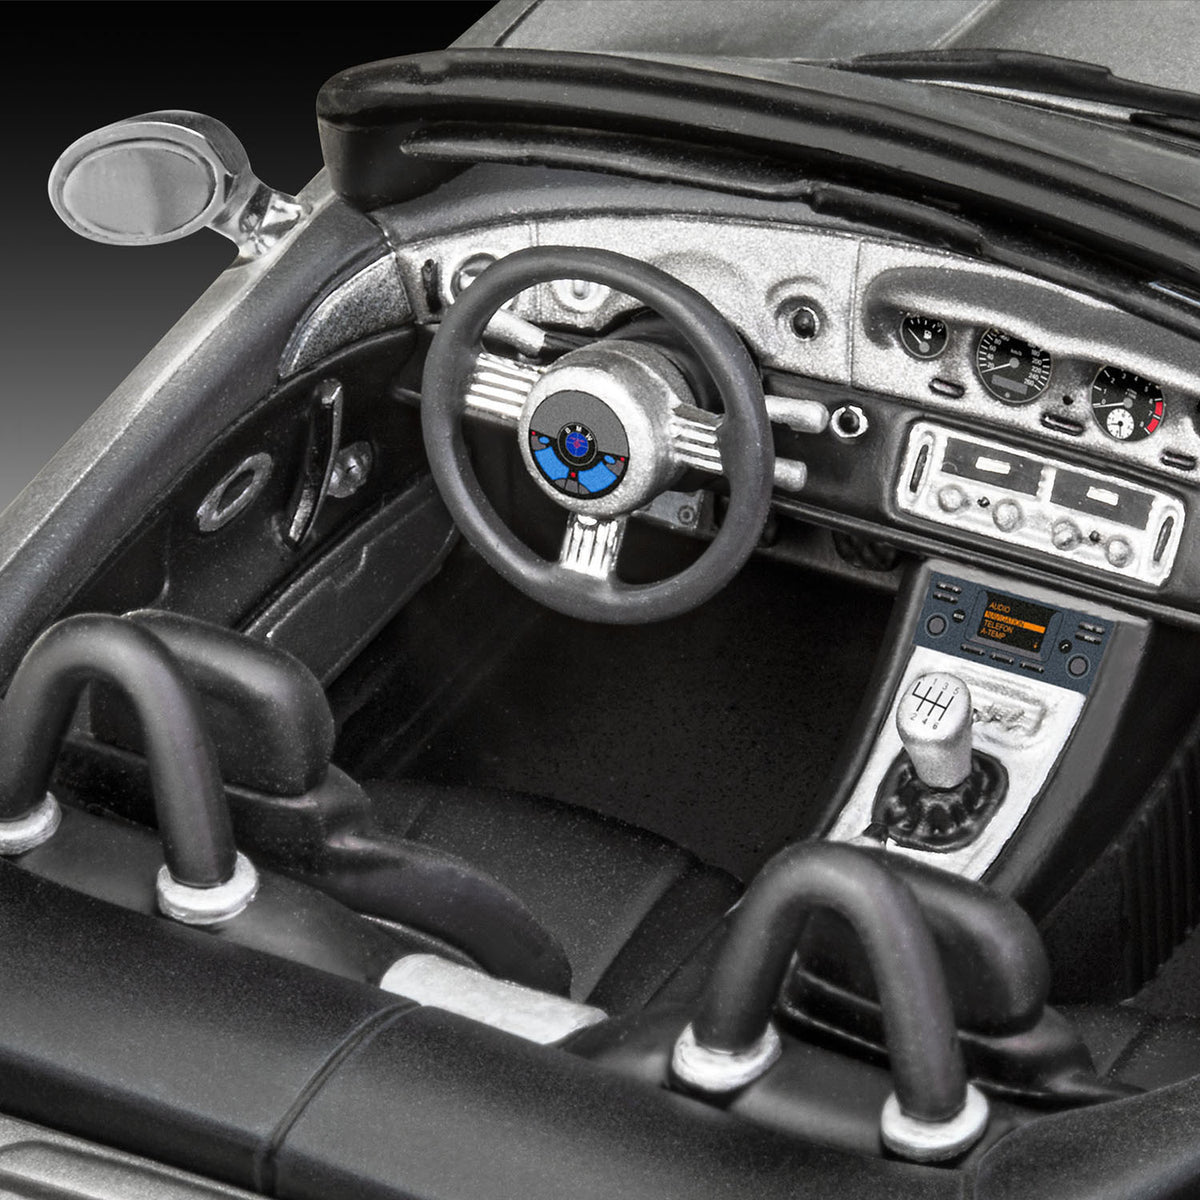 James Bond BMW Z8 Modellautobausatz - Die Welt ist nicht genug Edition - Von Revell